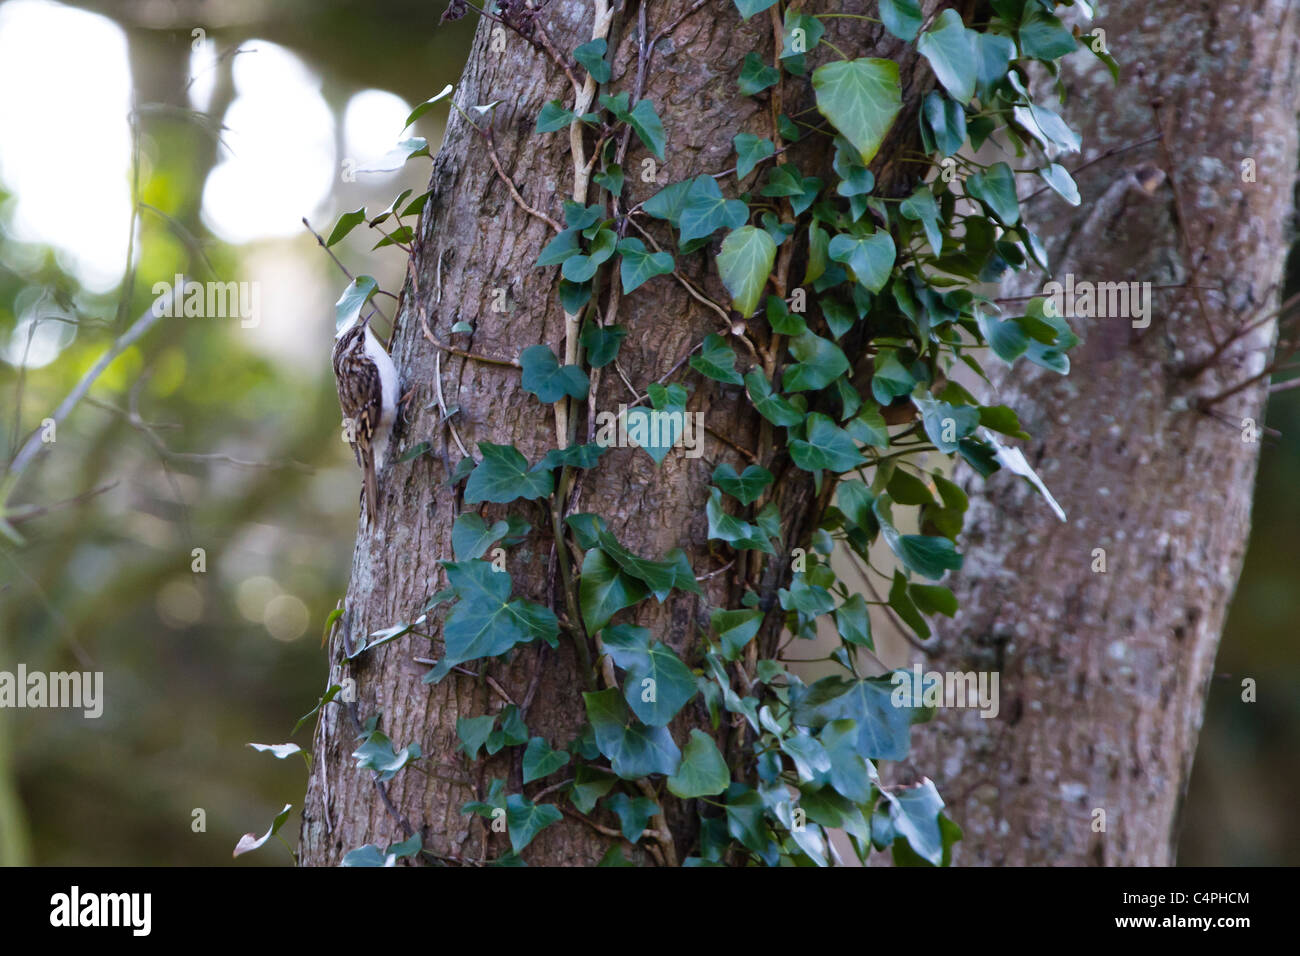 Treecreeper (Certhia familiaris). Stock Photo